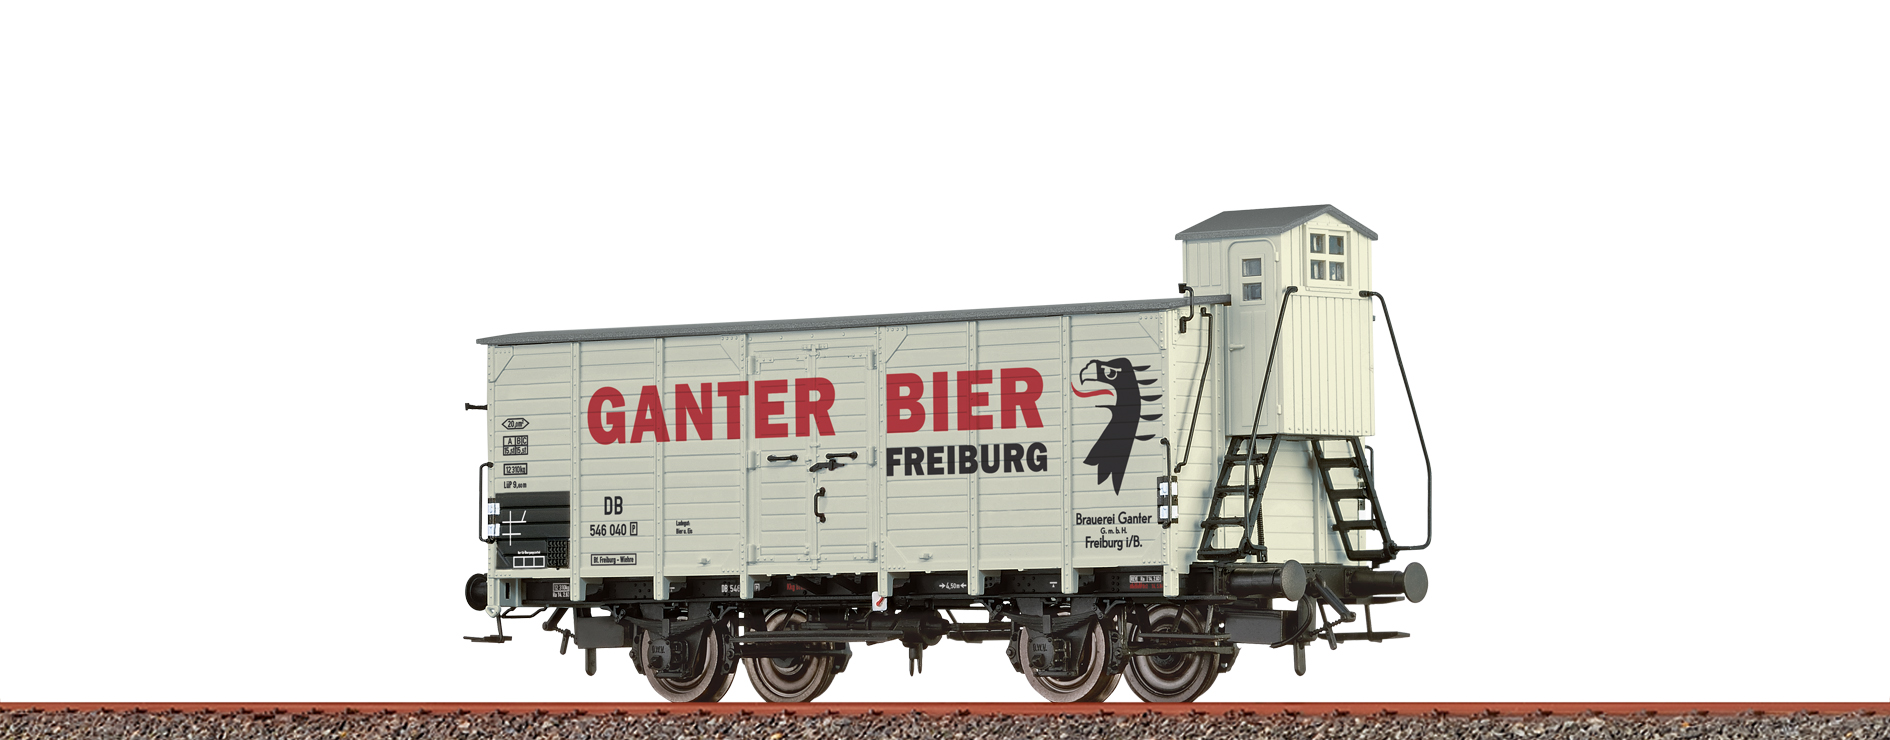 Brawa 49871 H0 GW-G [P] Bierwagen DB, III, Ganter